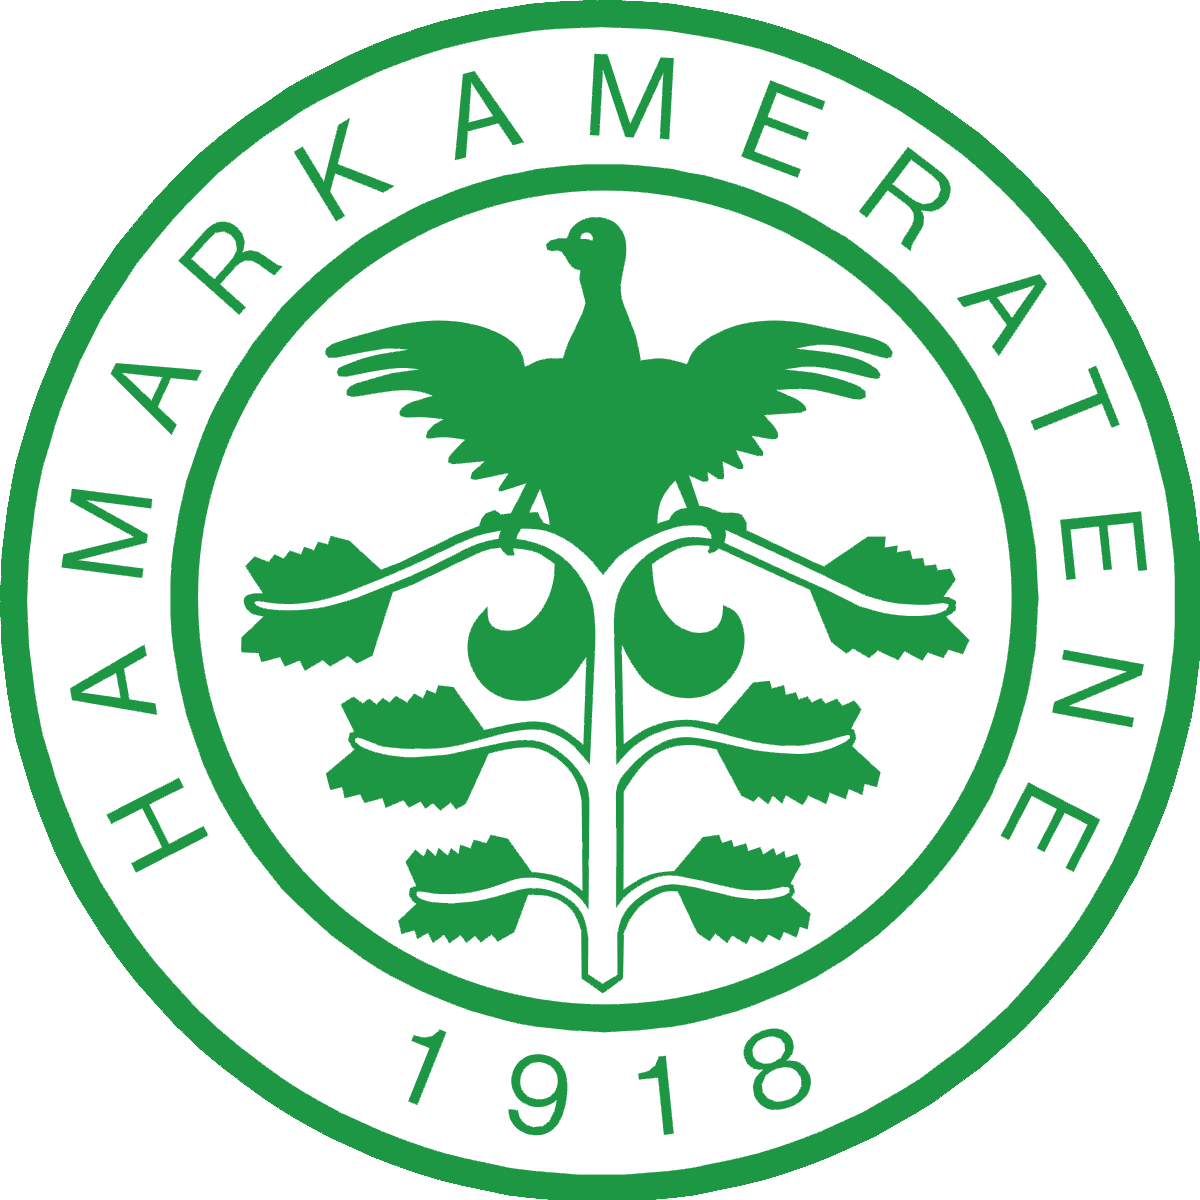 Hamarkameratene_logo.svg.png